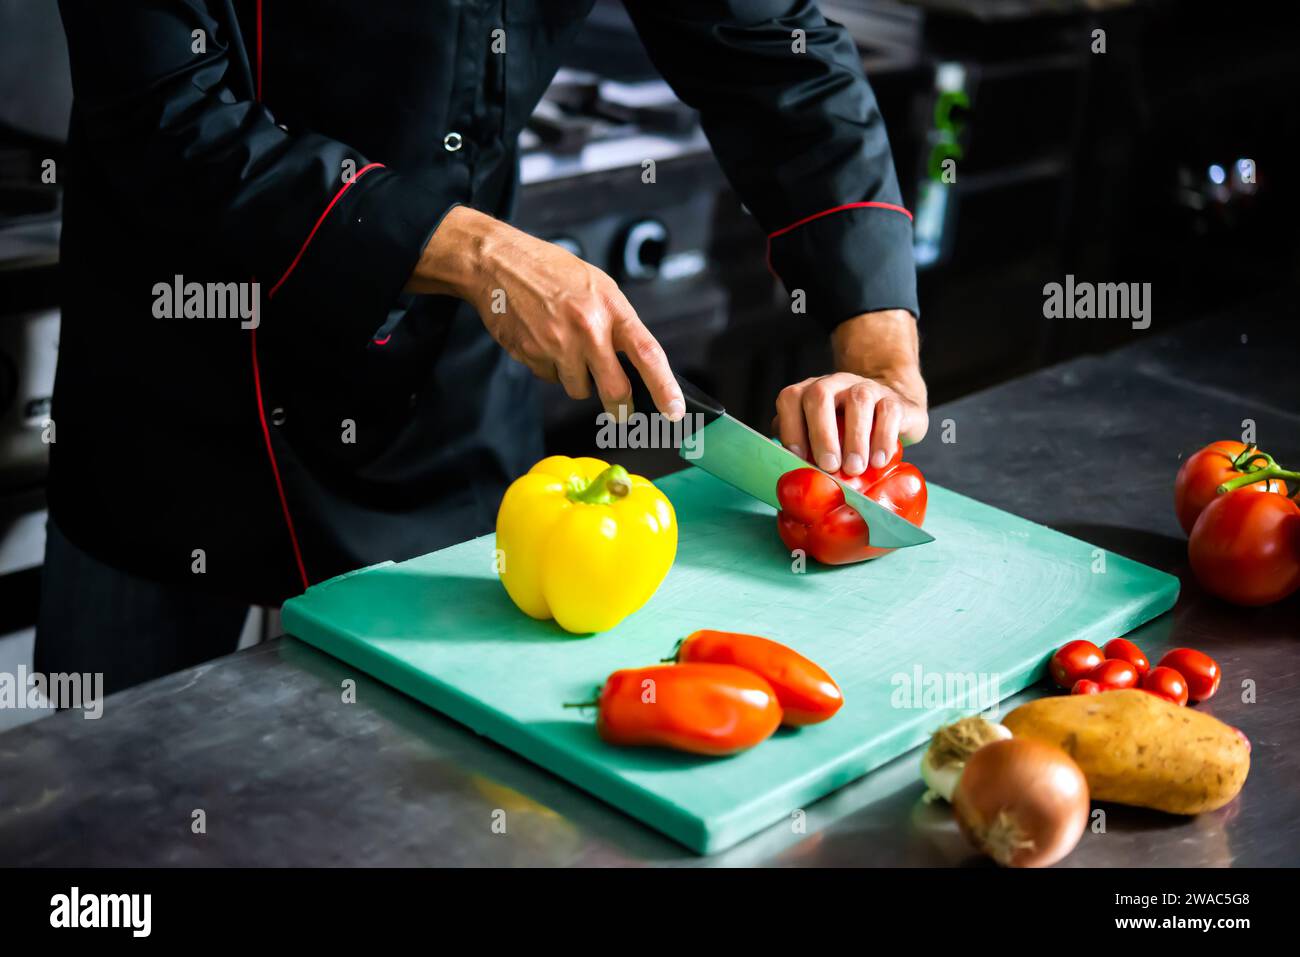 El chef corta meticulosamente las verduras frescas en una tabla de cortar para la preparación de la comida Foto de stock